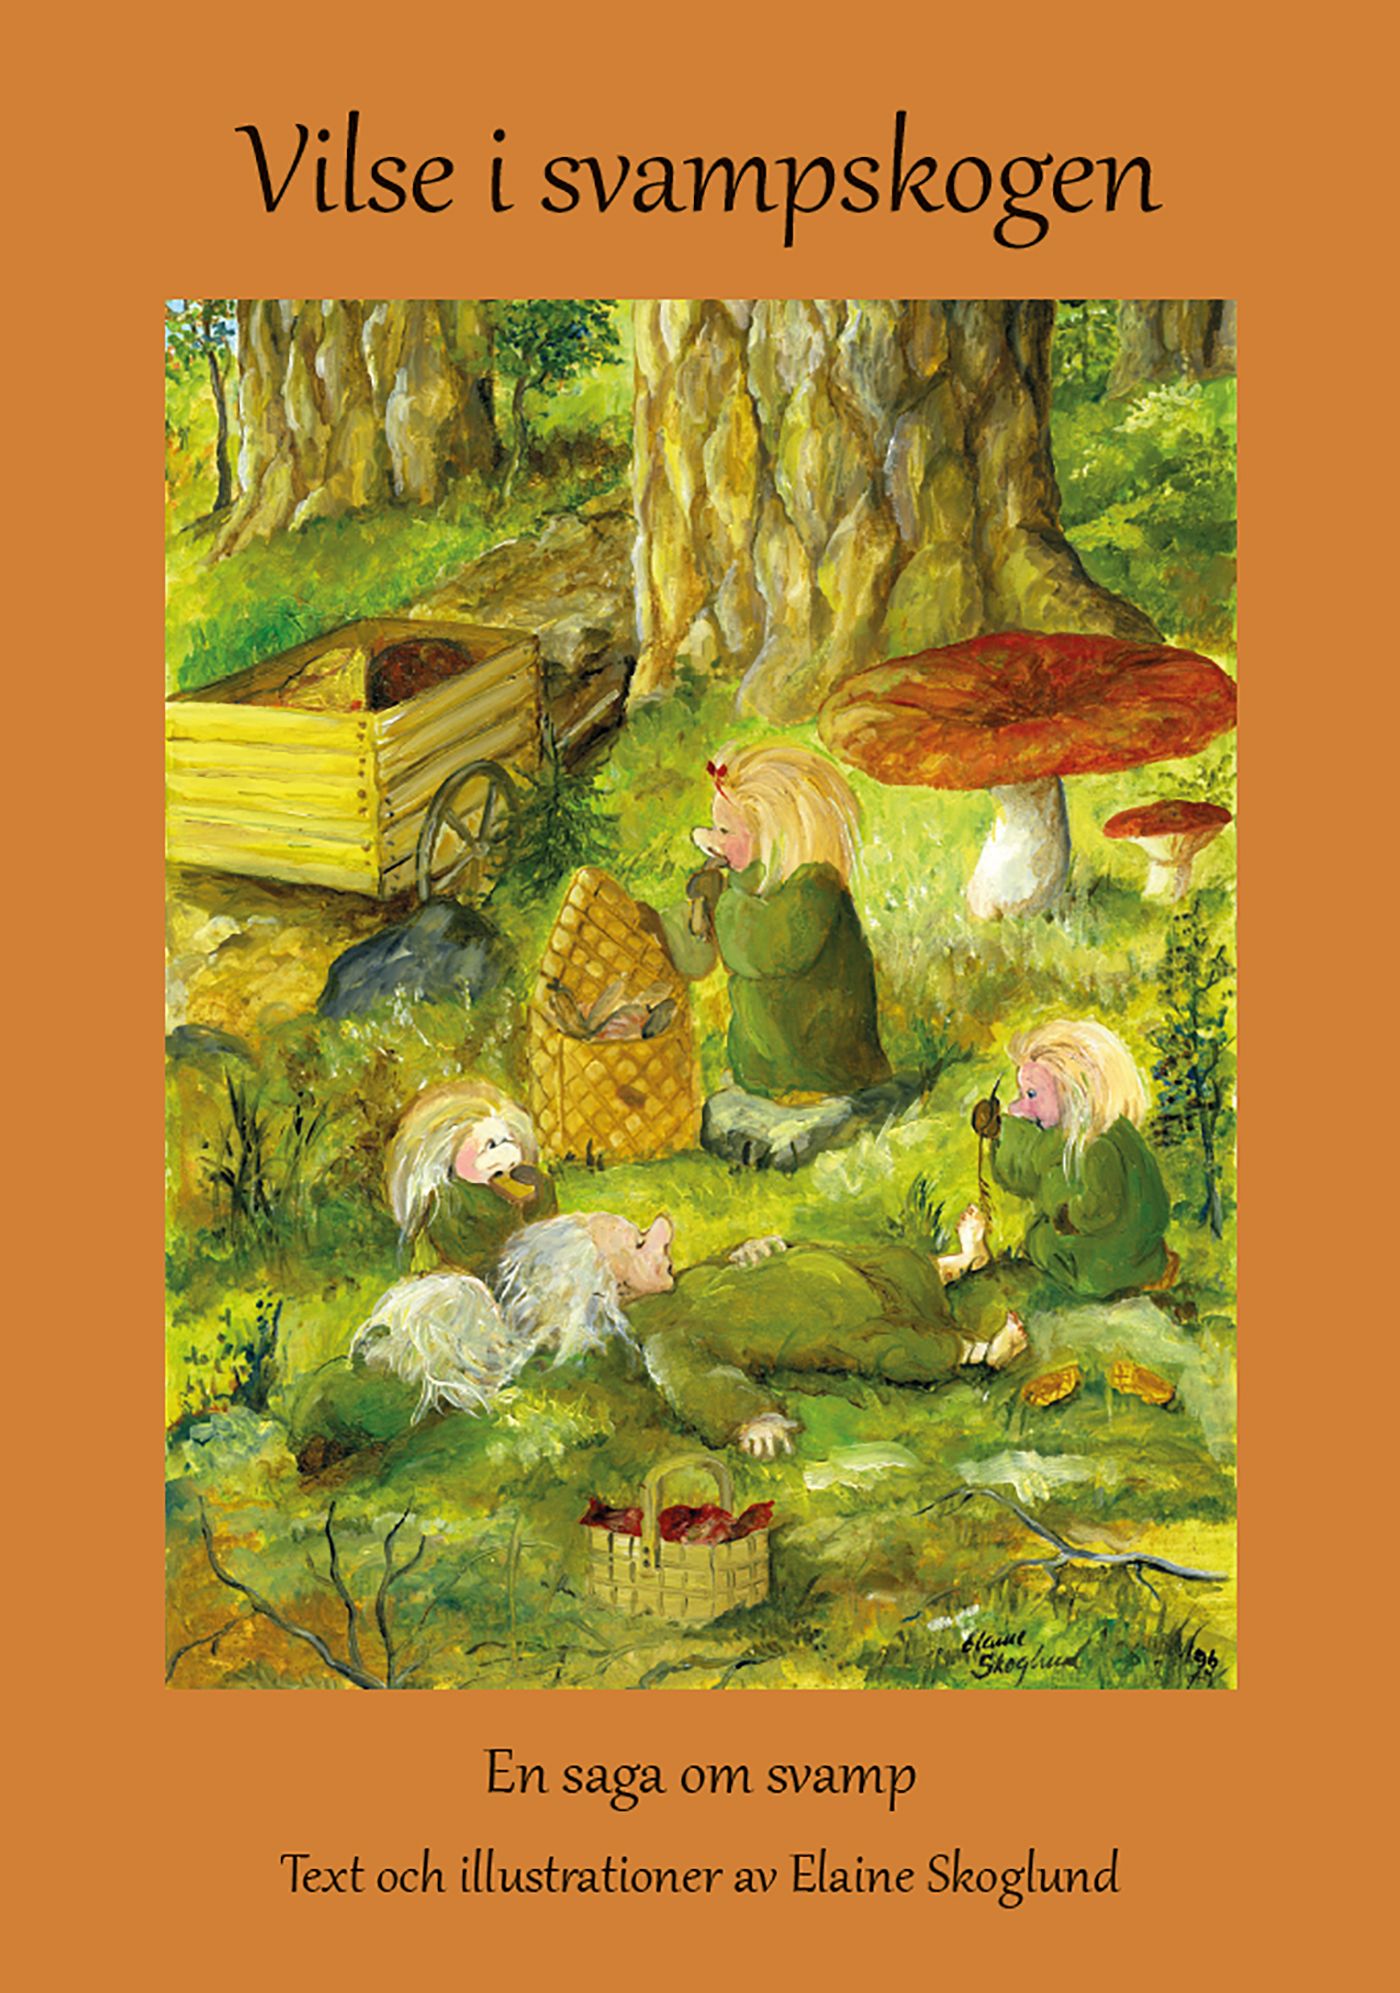 Vilse i svampskogen, e-bok av Elaine Skoglund